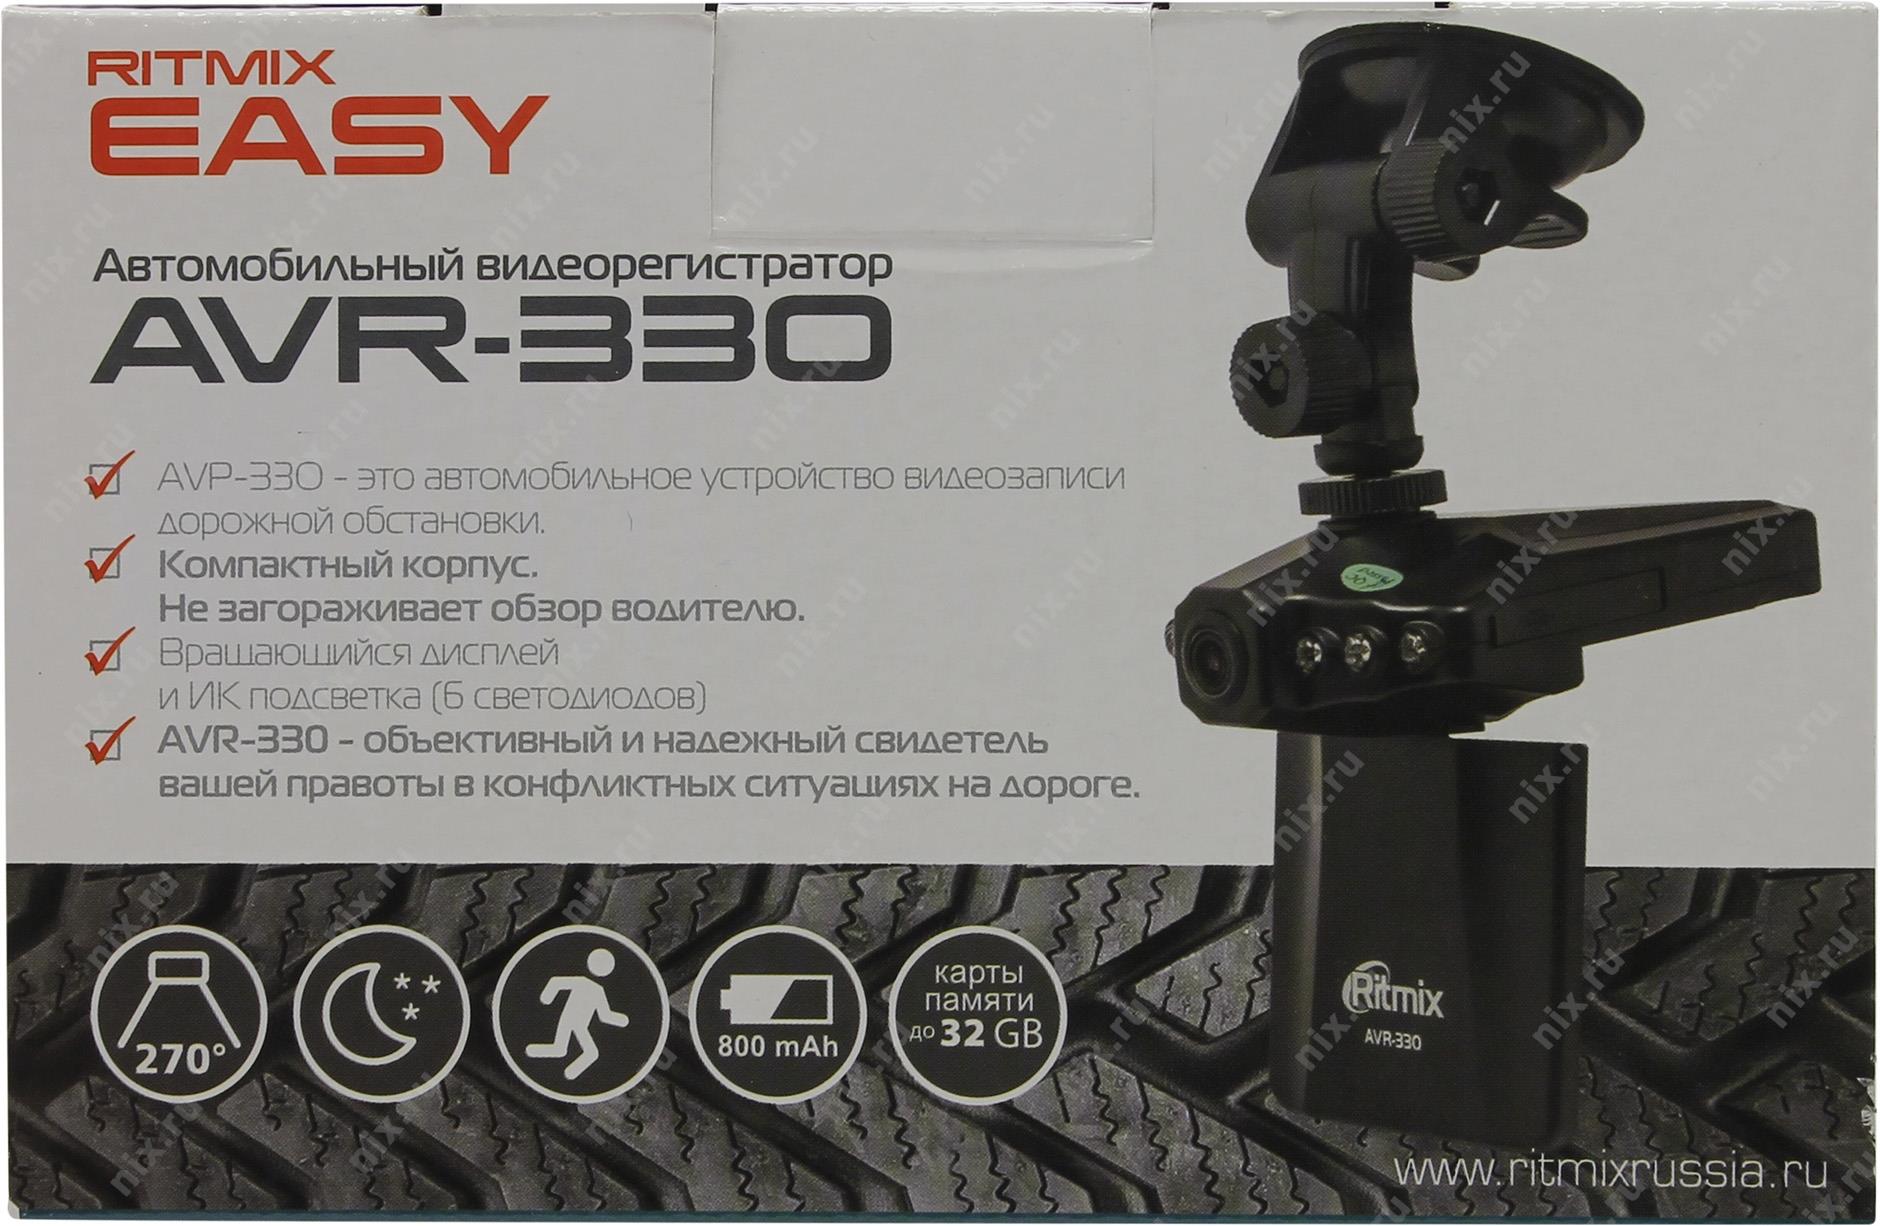 Ritmix AVR-330 easy